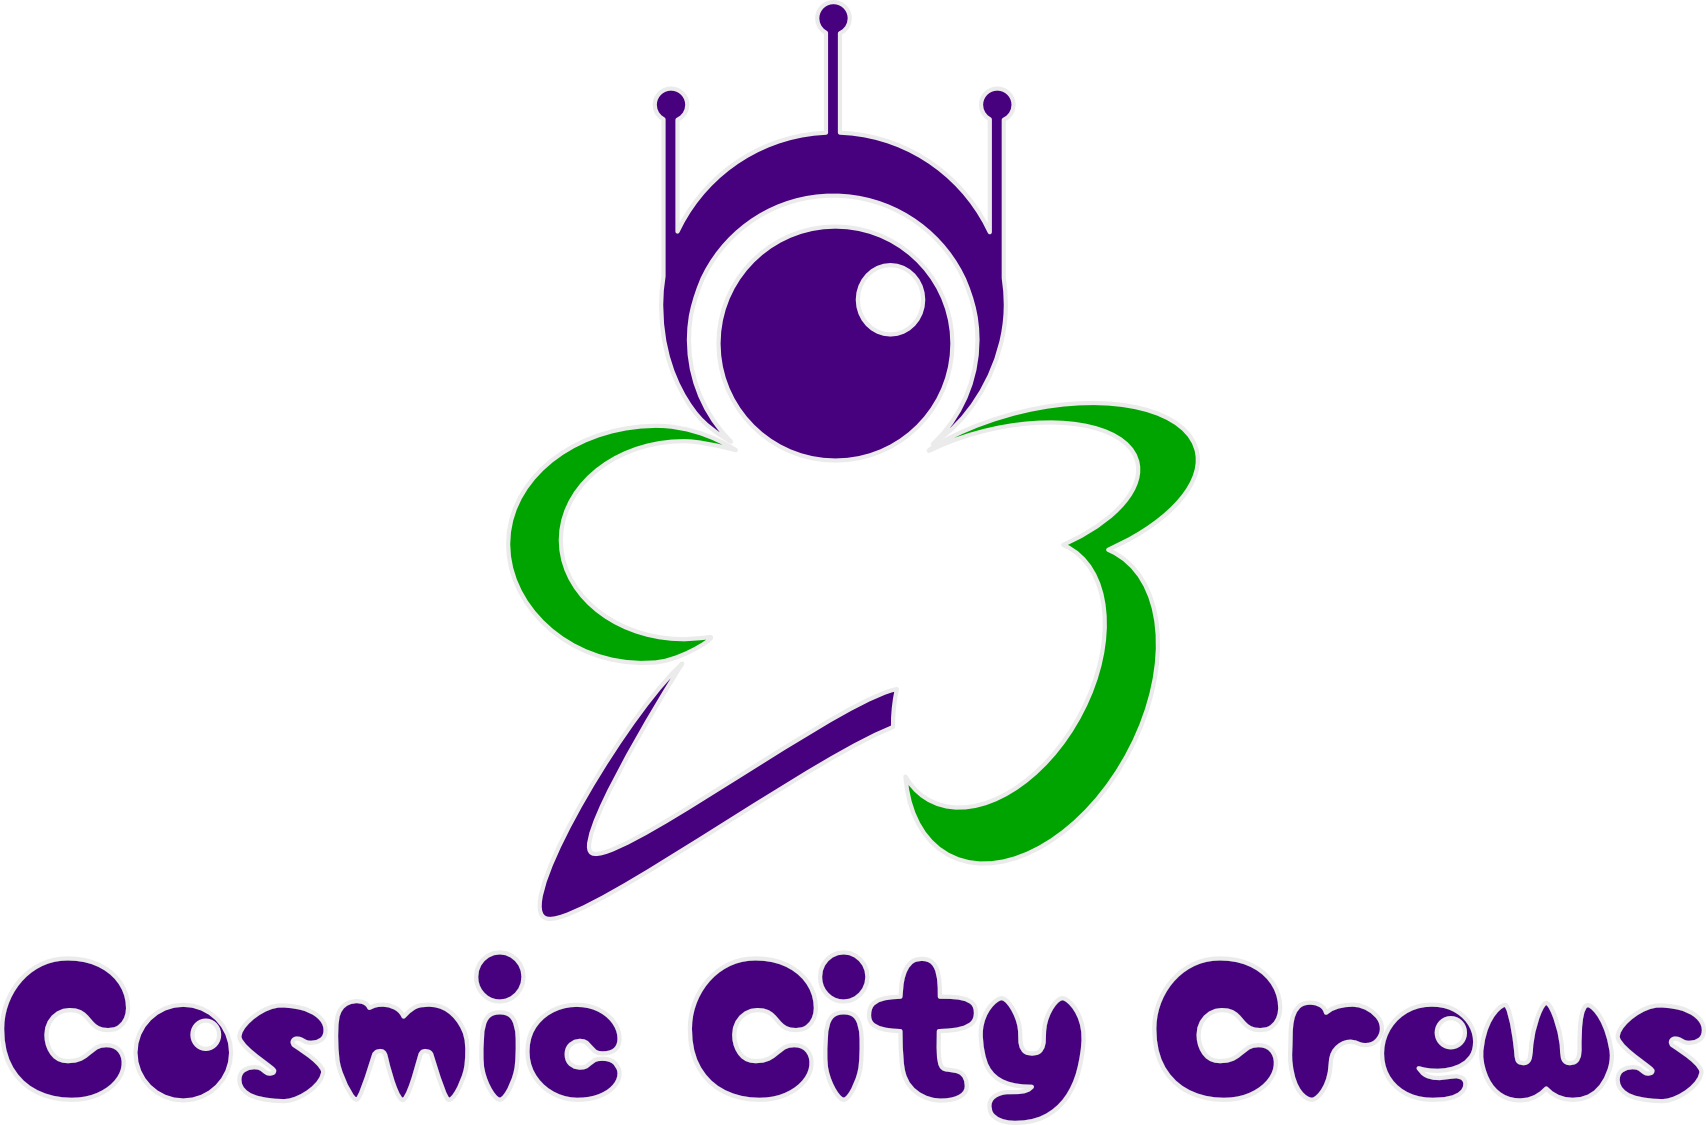 Cosmic City Crews